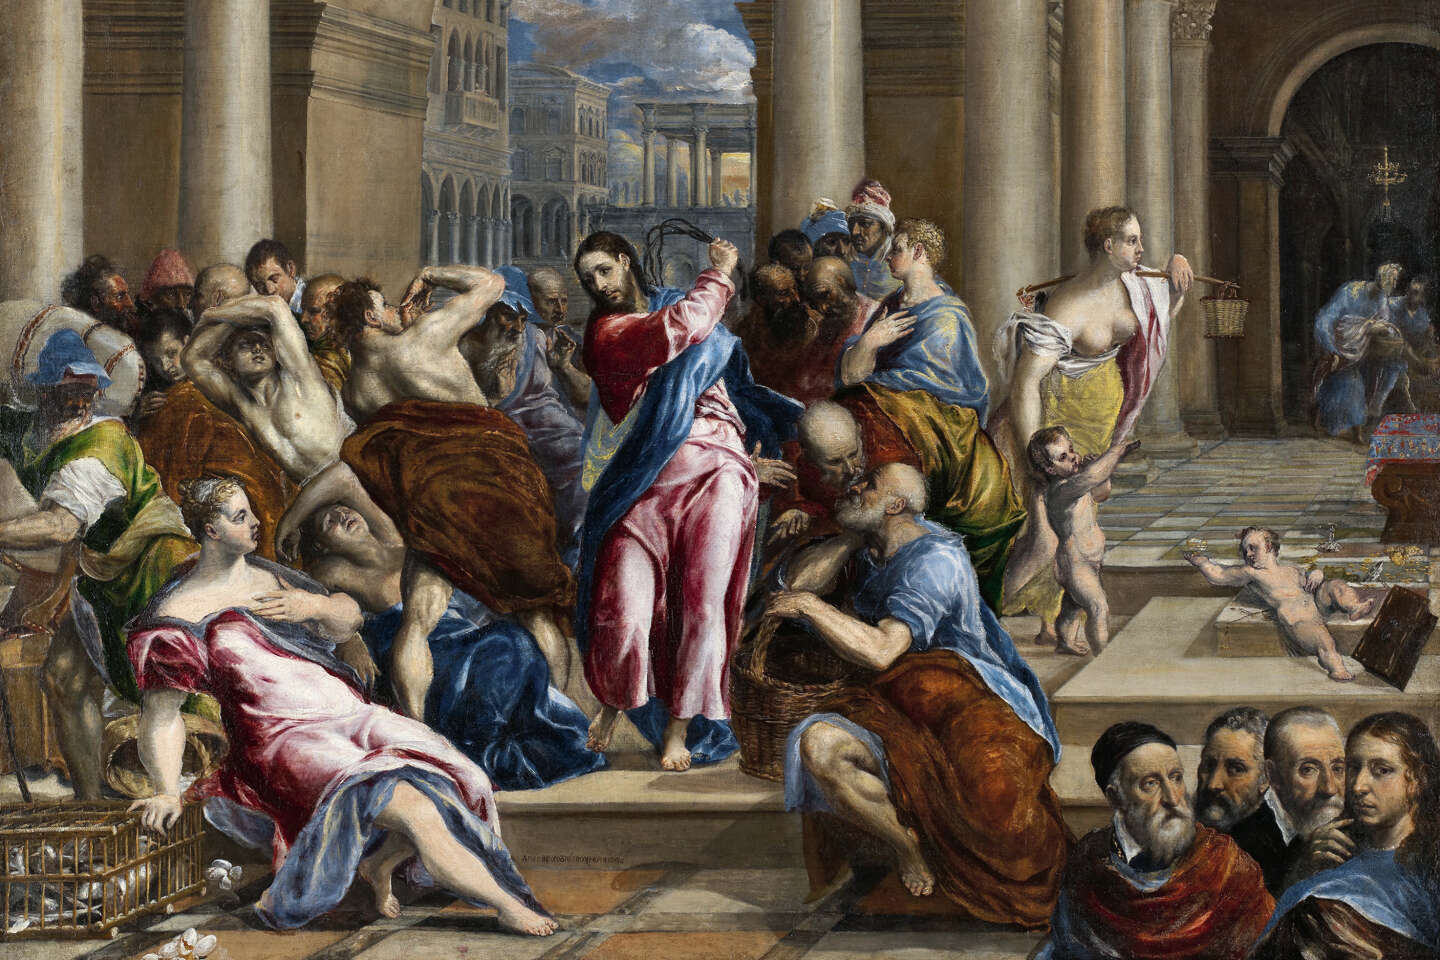 Le Greco, l’artiste qui a transfiguré la peinture, au Grand Palais